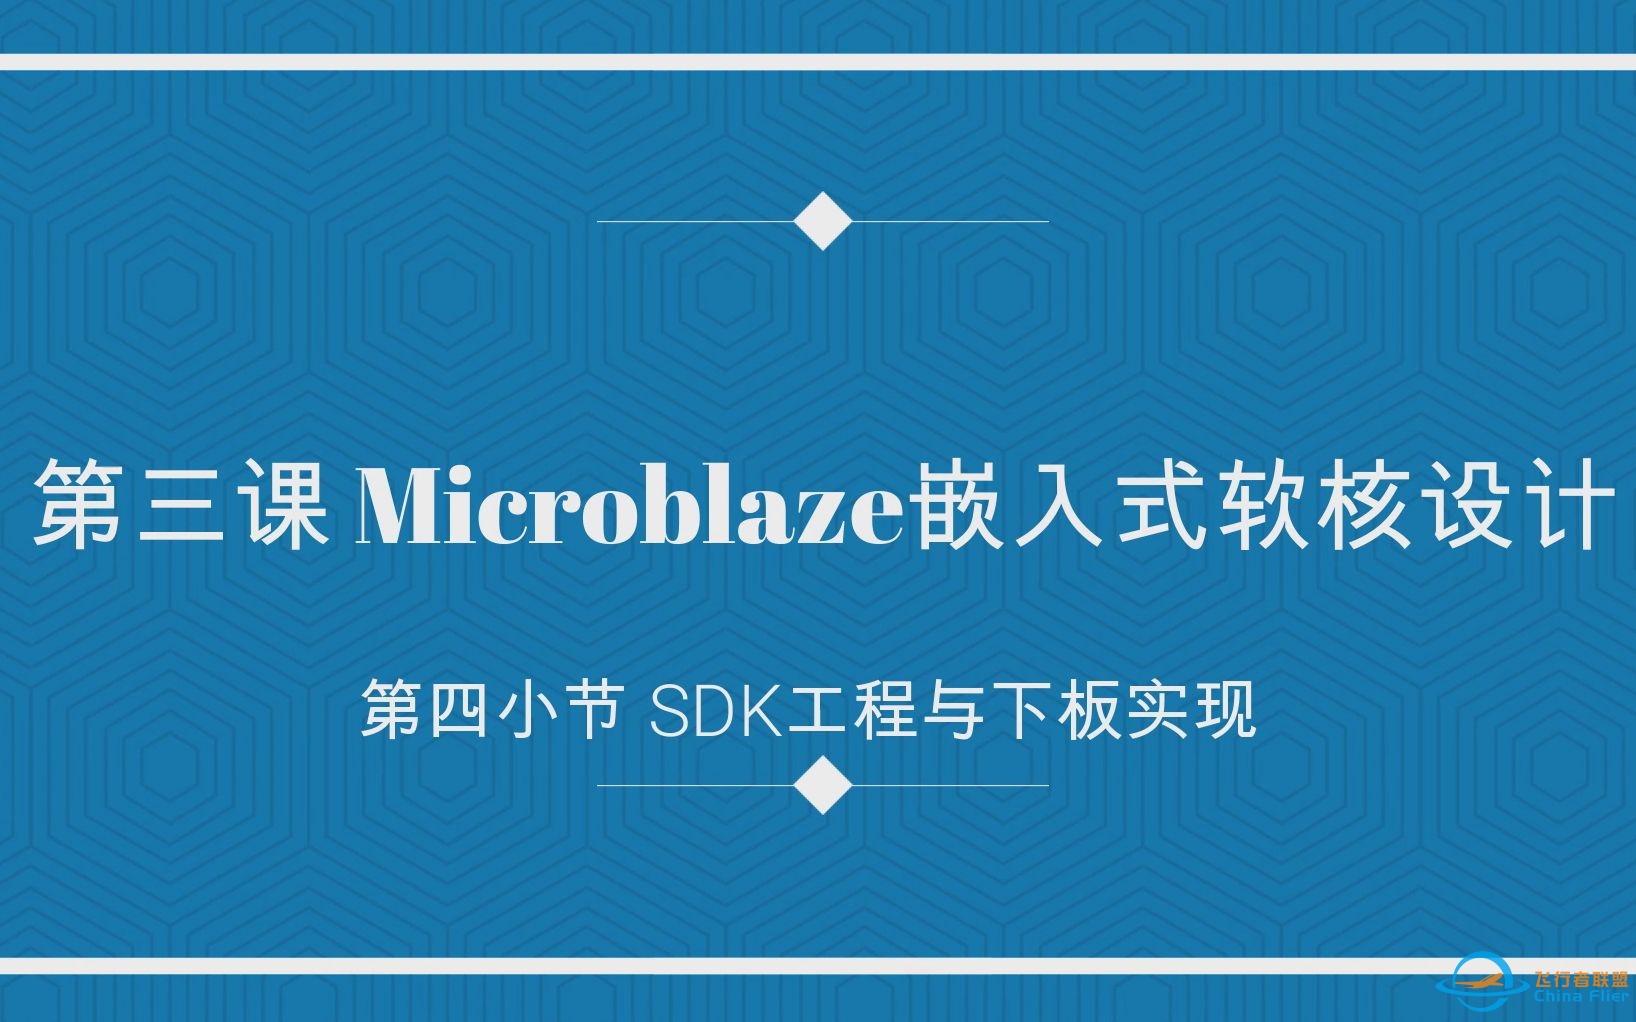 第三课 Microblaze嵌入式软核设计 第四小节SDK工程与下板实现-1147 